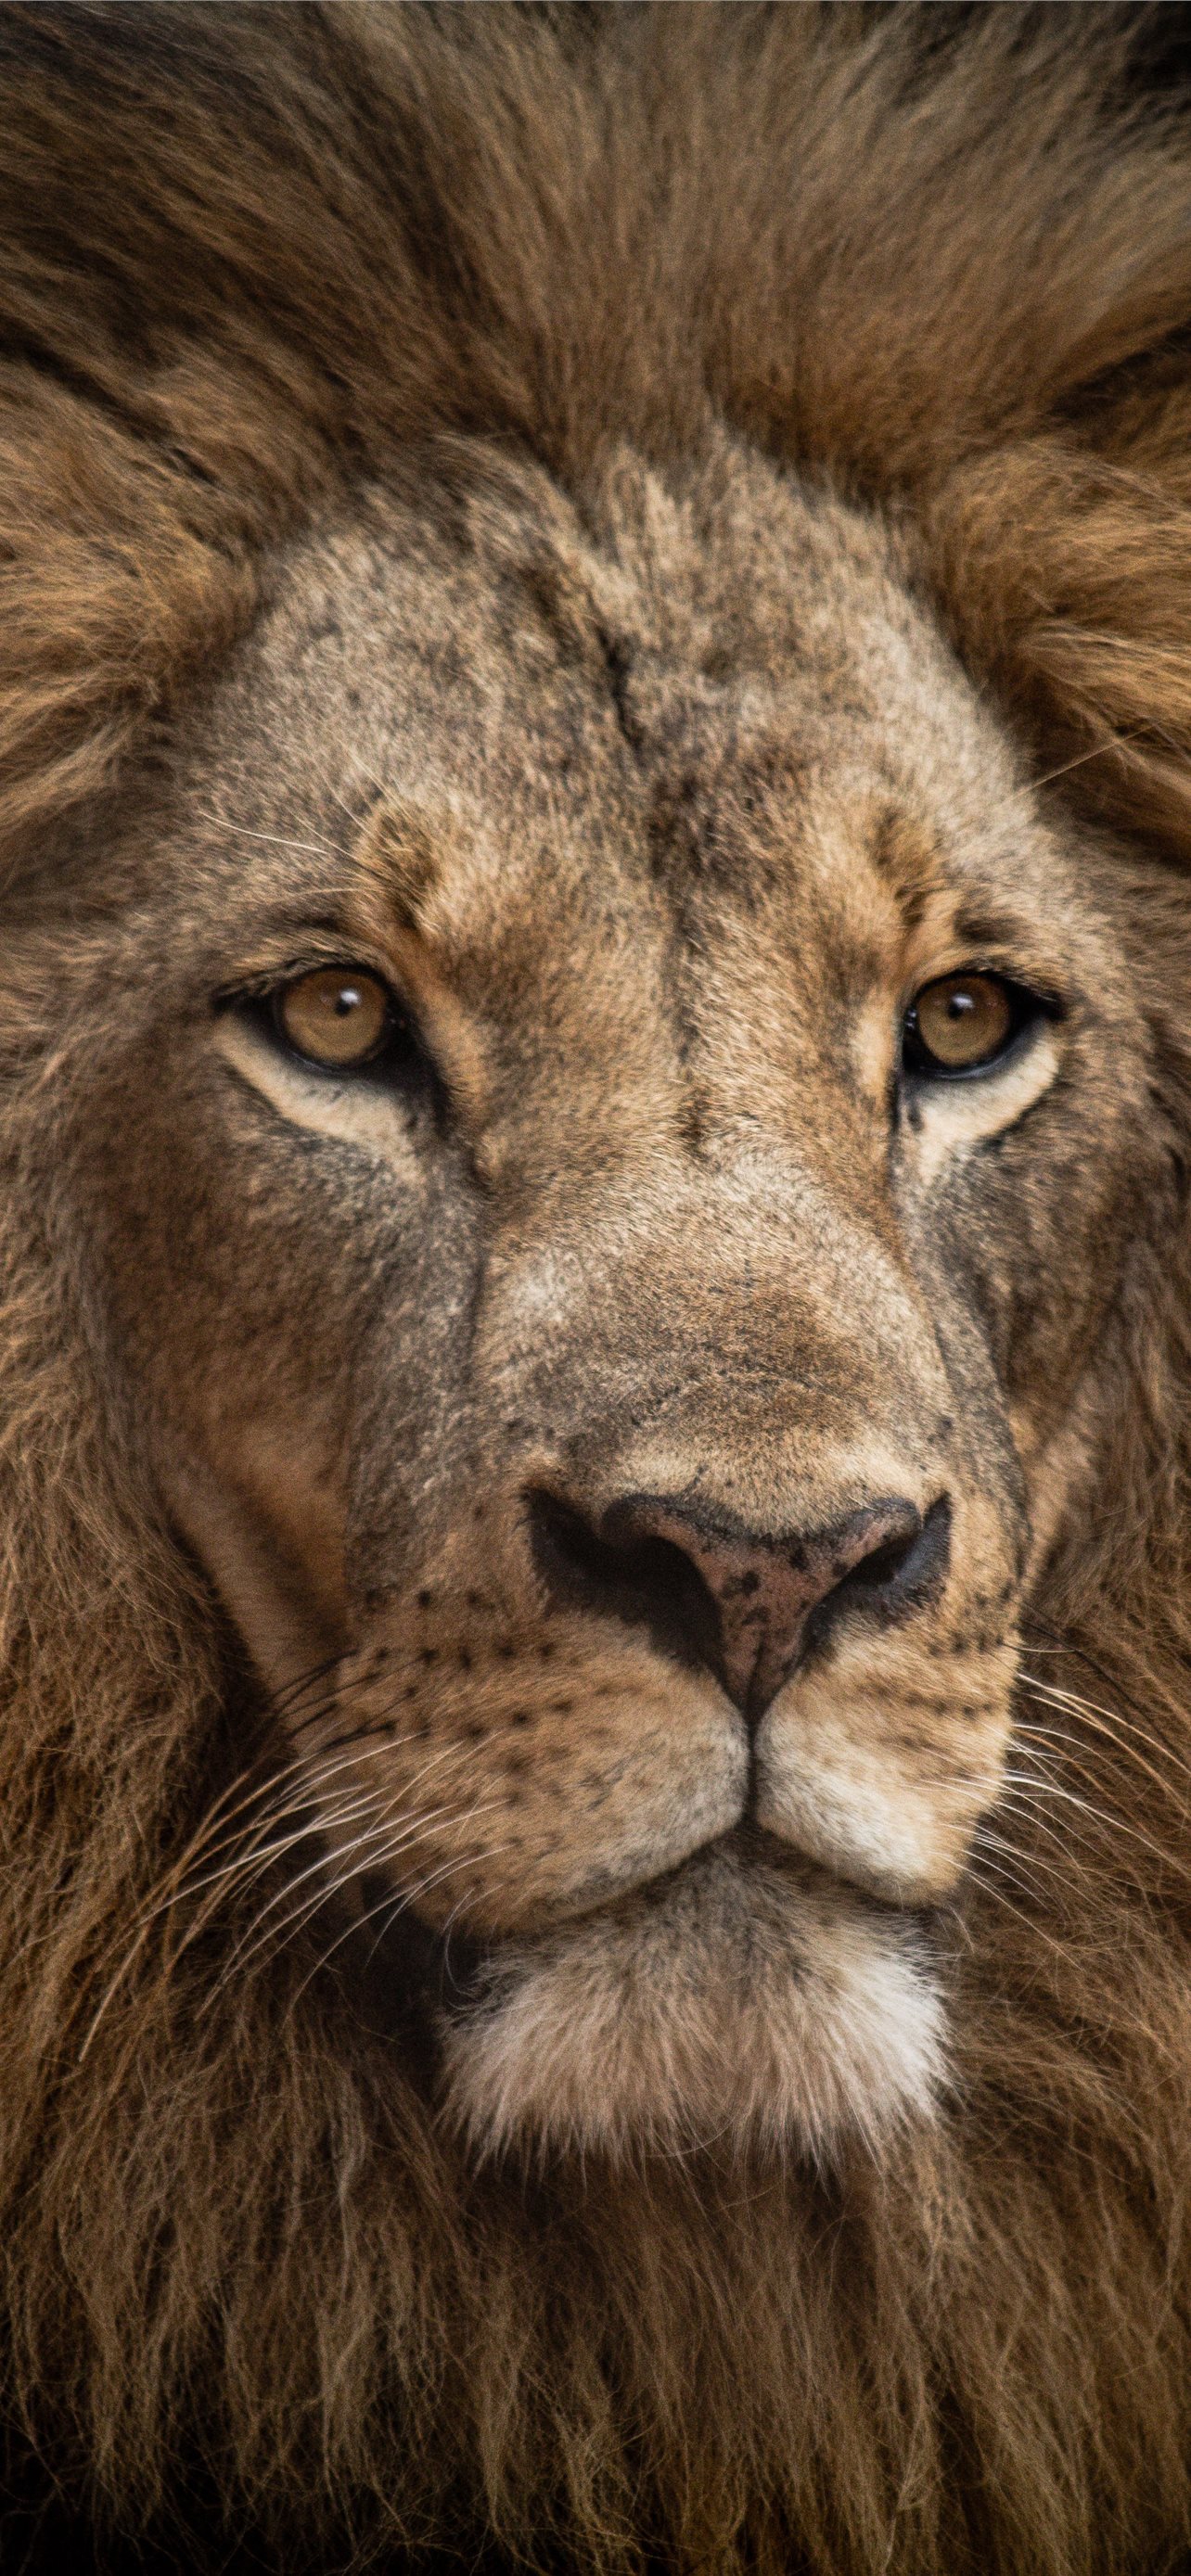 Hình nền Lion in Close-up Shot sẽ khiến bạn cảm thấy rất gần gũi với chúa sơn lâm này. Tươi sáng và rõ nét như thật, hình ảnh này sẽ làm bạn đắm chìm trong thế giới hoang dã của sơn lâm.